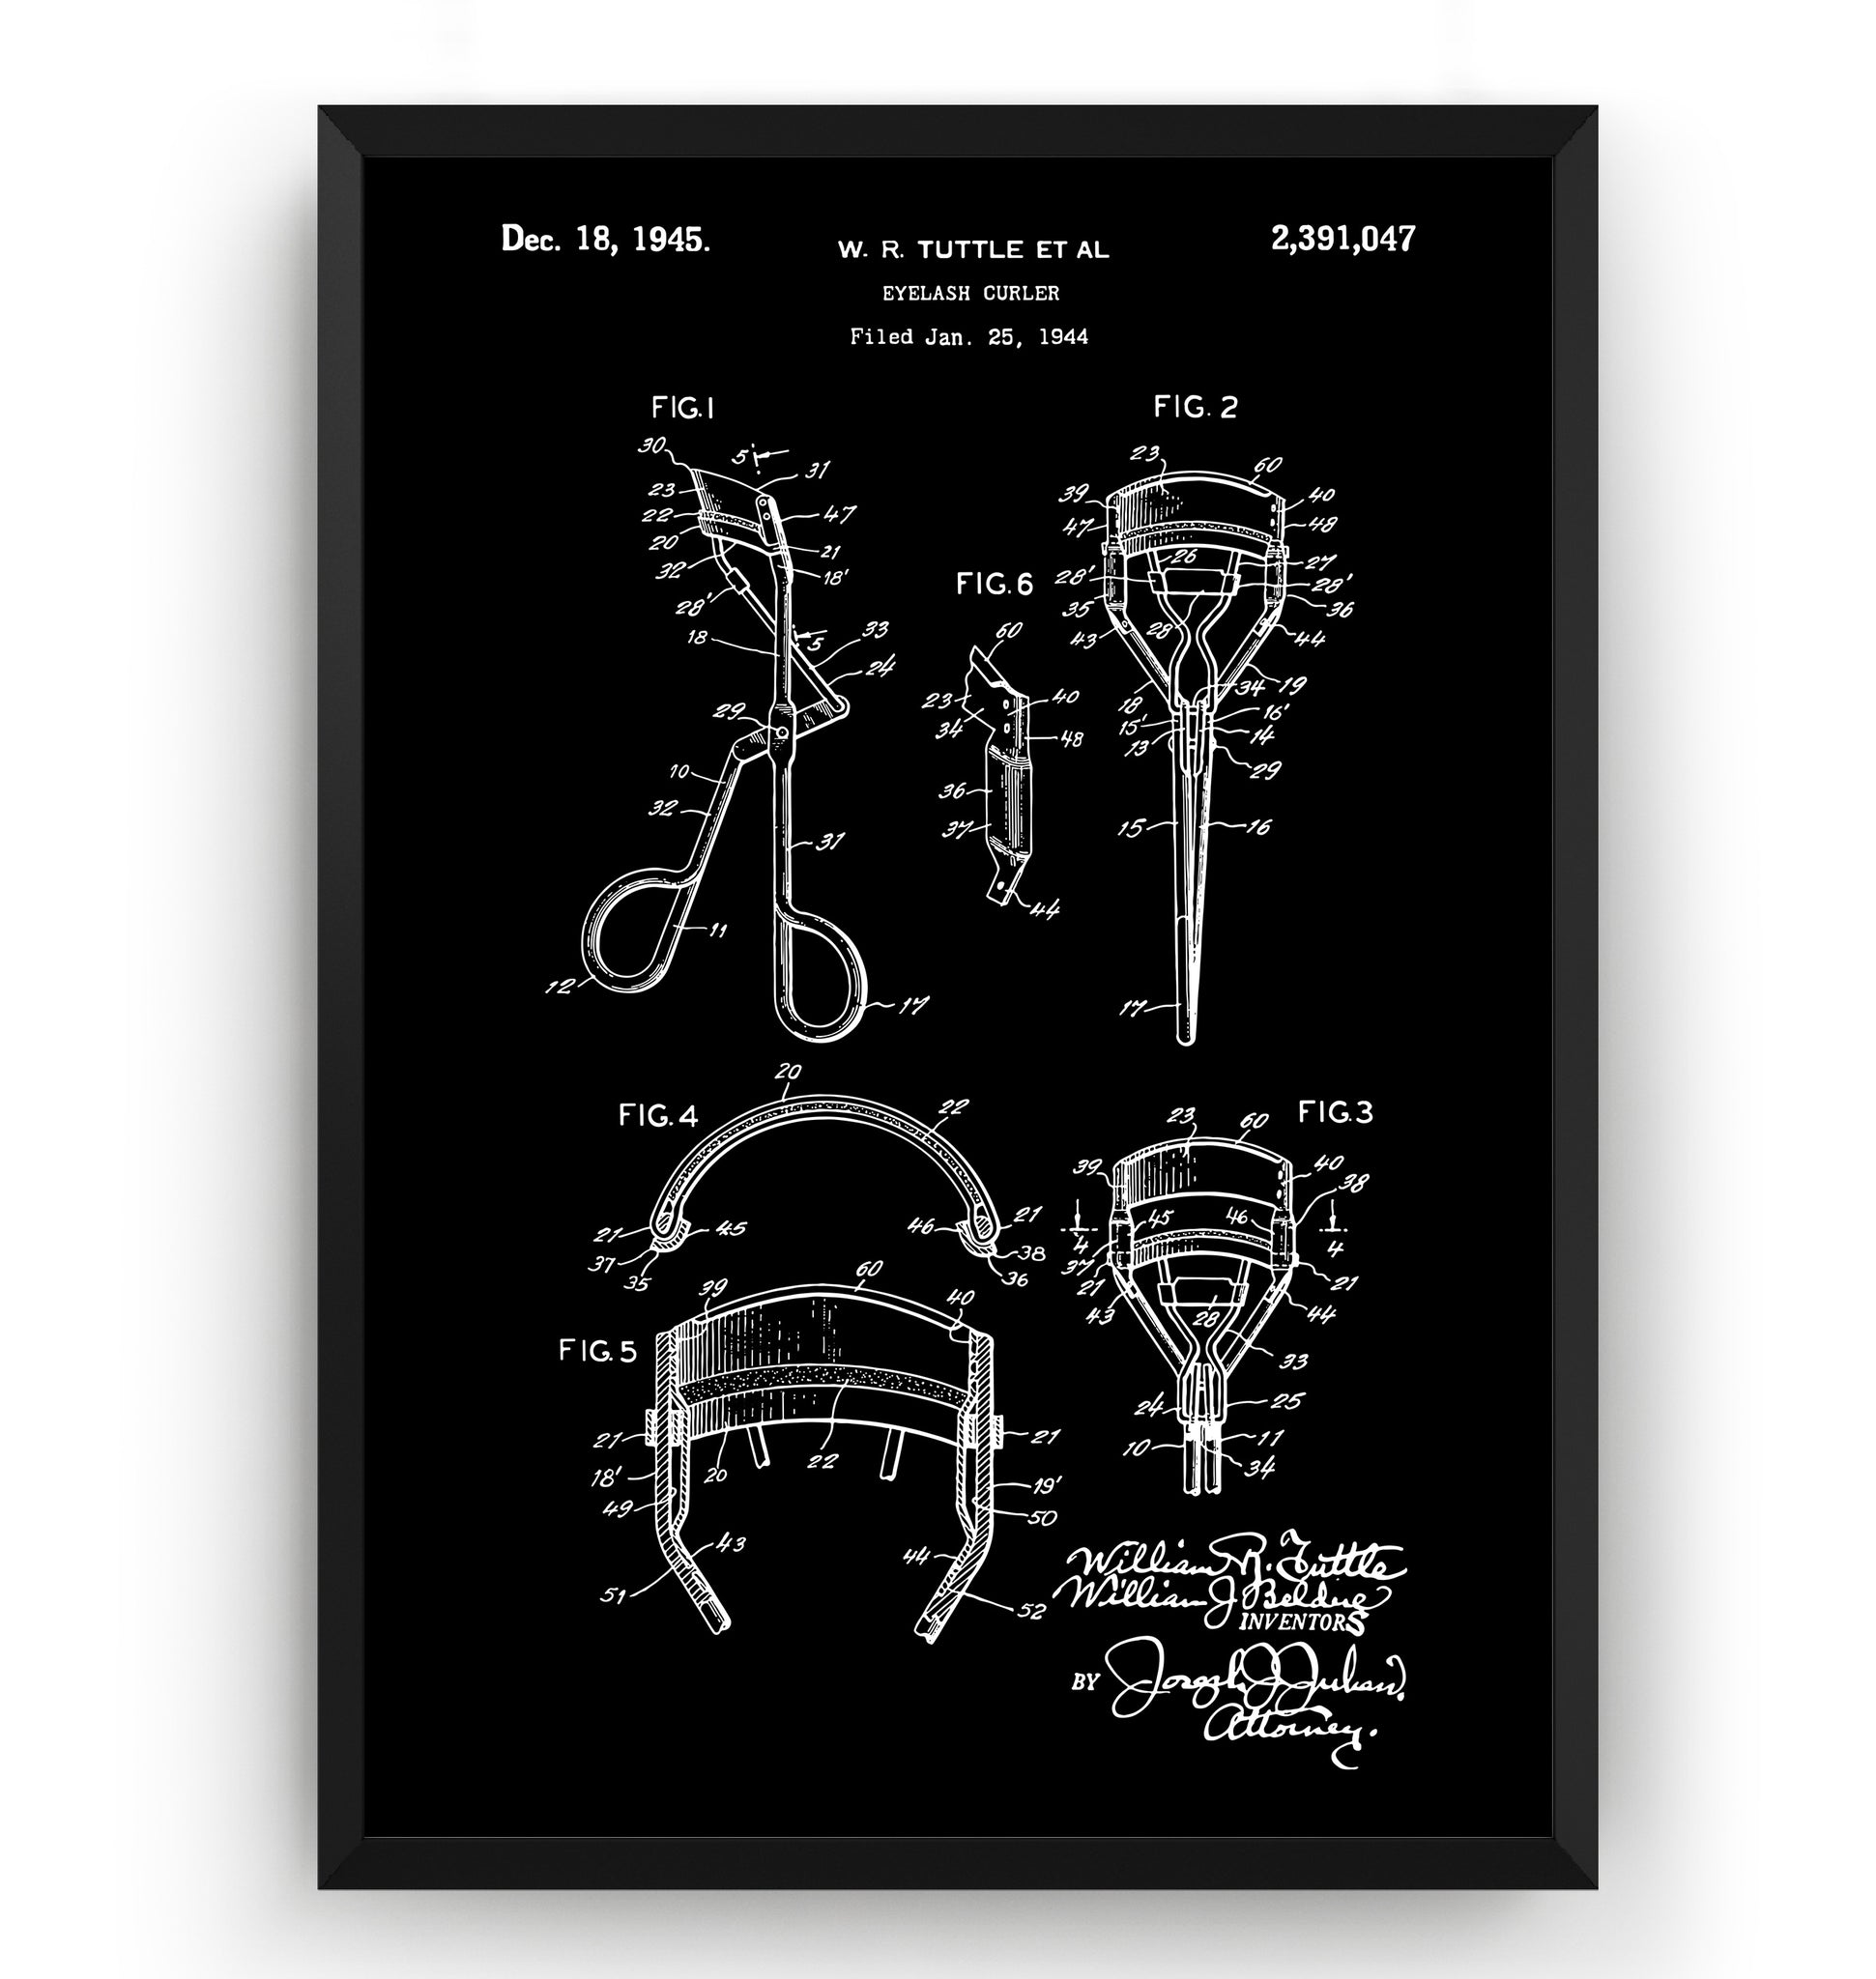 Eyelash Curler 1945 Patent Print - Magic Posters